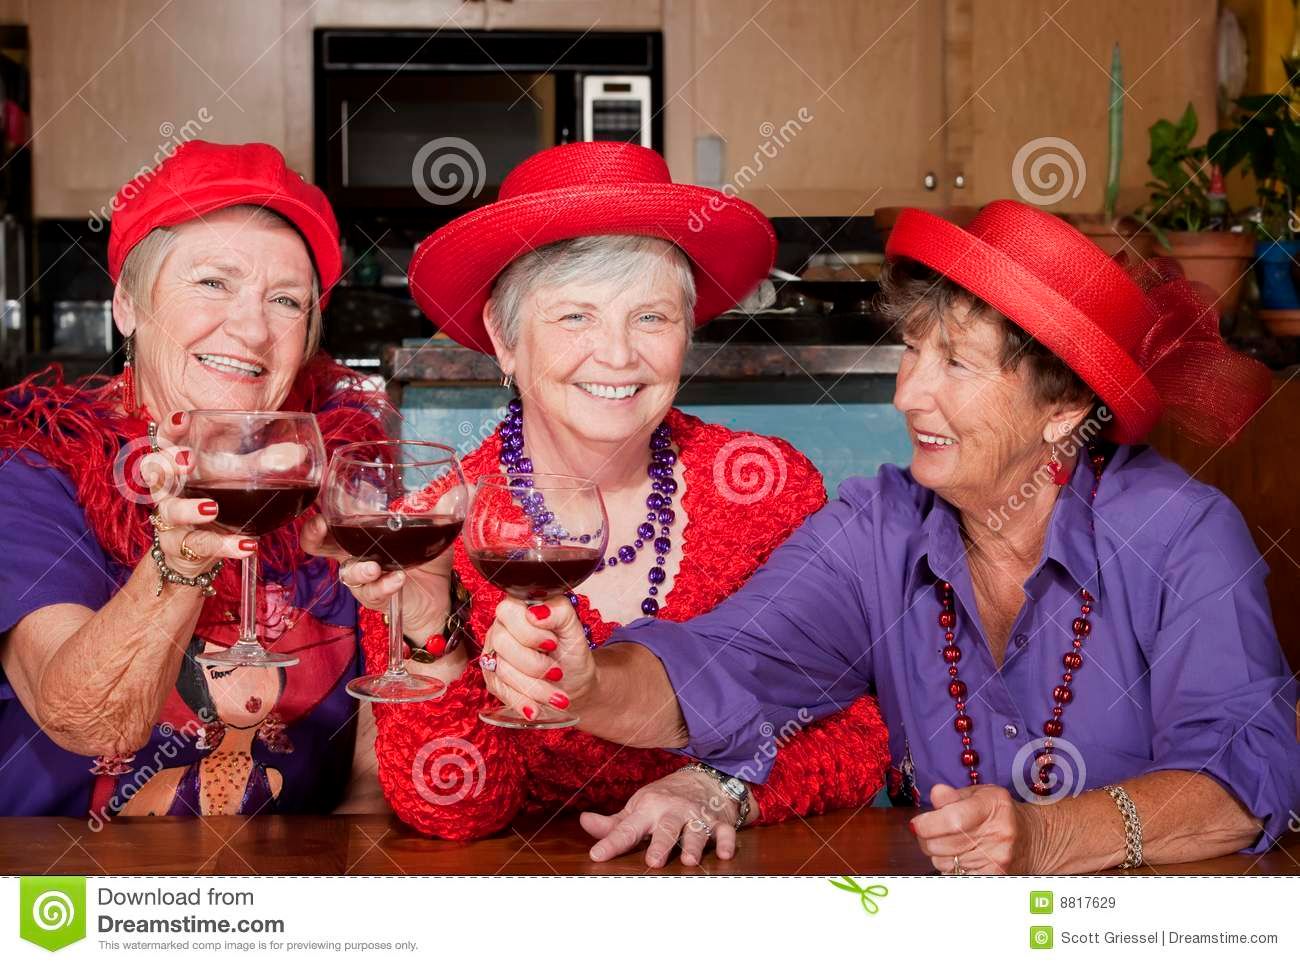 red hat ladies.jpg